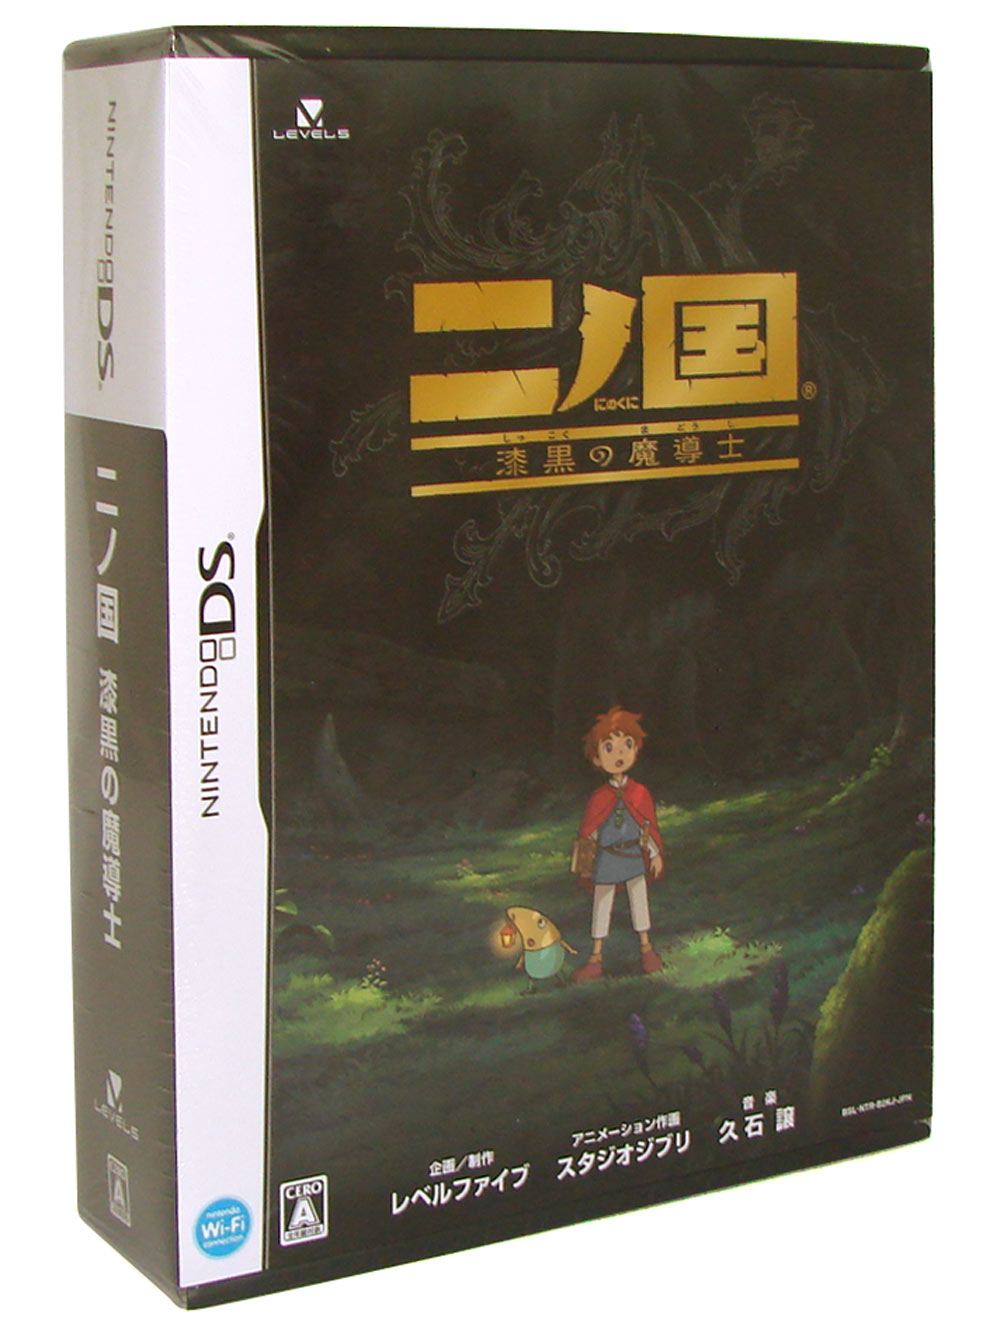 Ninokuni: Shikkoku no Madoushi for Nintendo DS